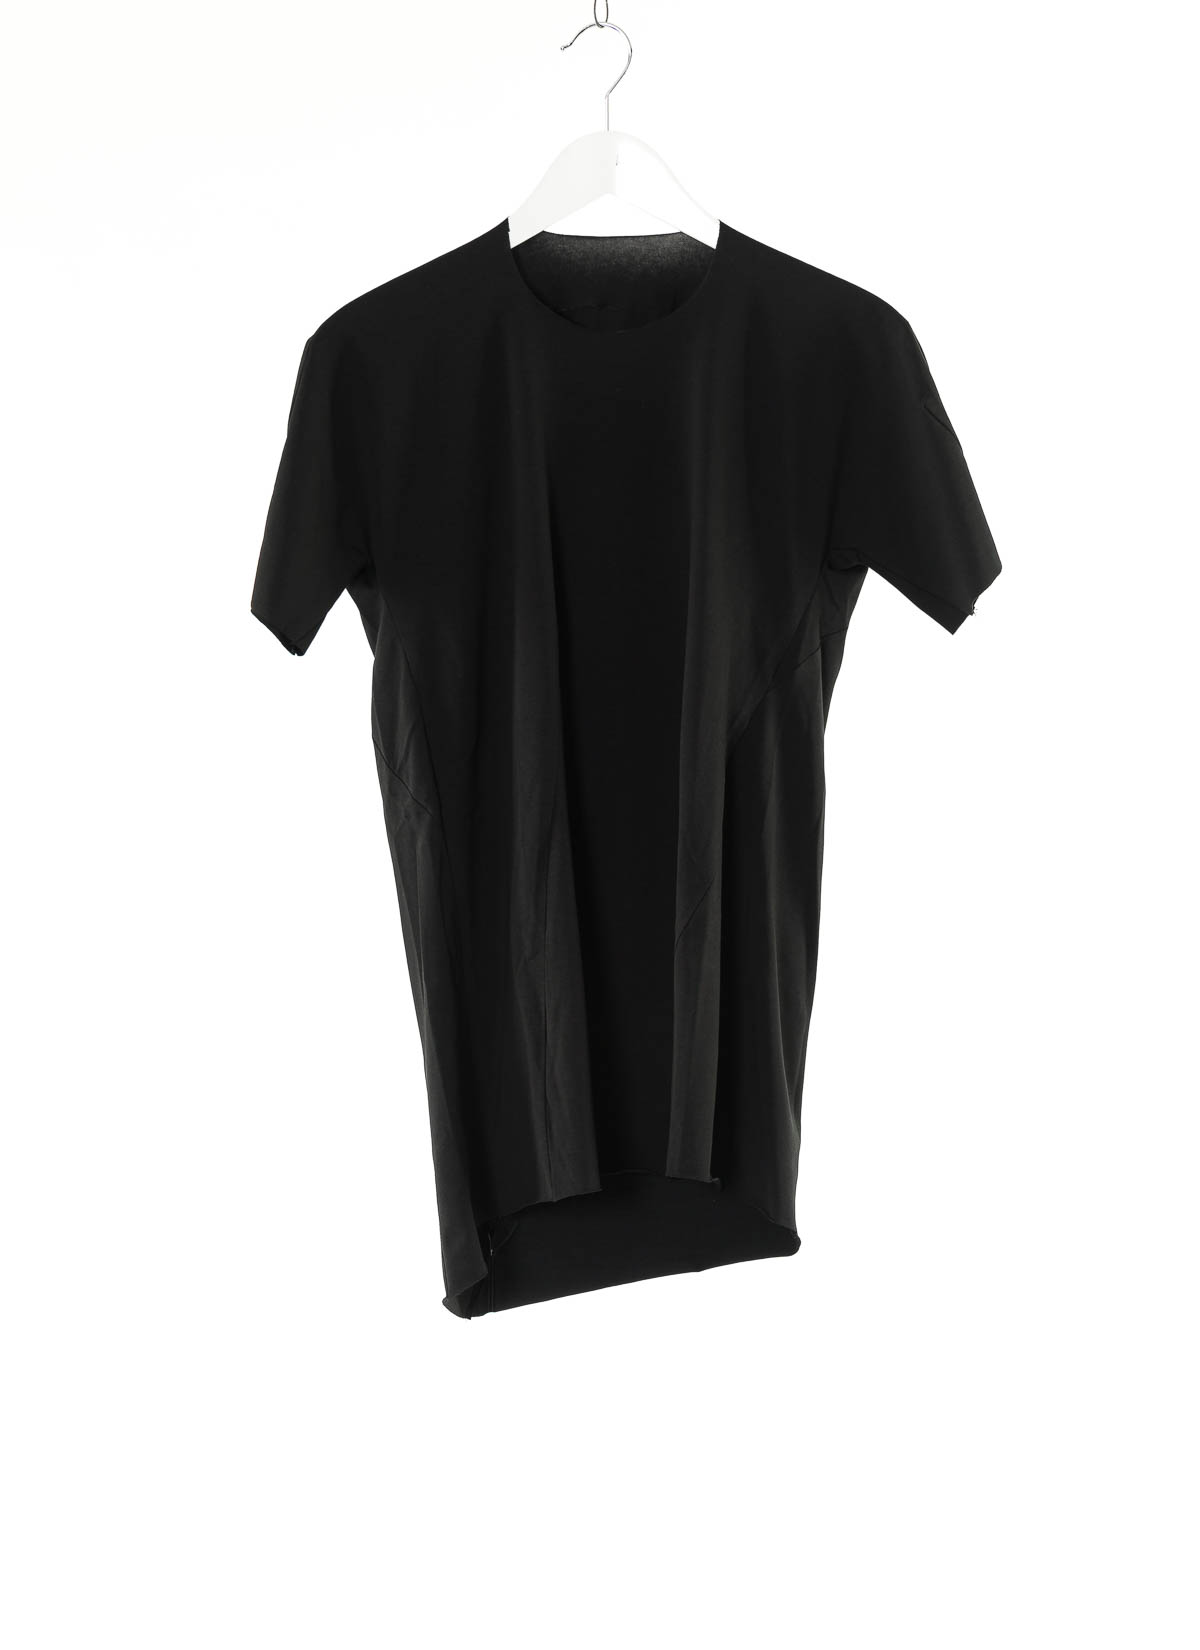 hide-m | LEON EMANUEL BLANCK Distortion GS T-Shirt, black cotton/ea